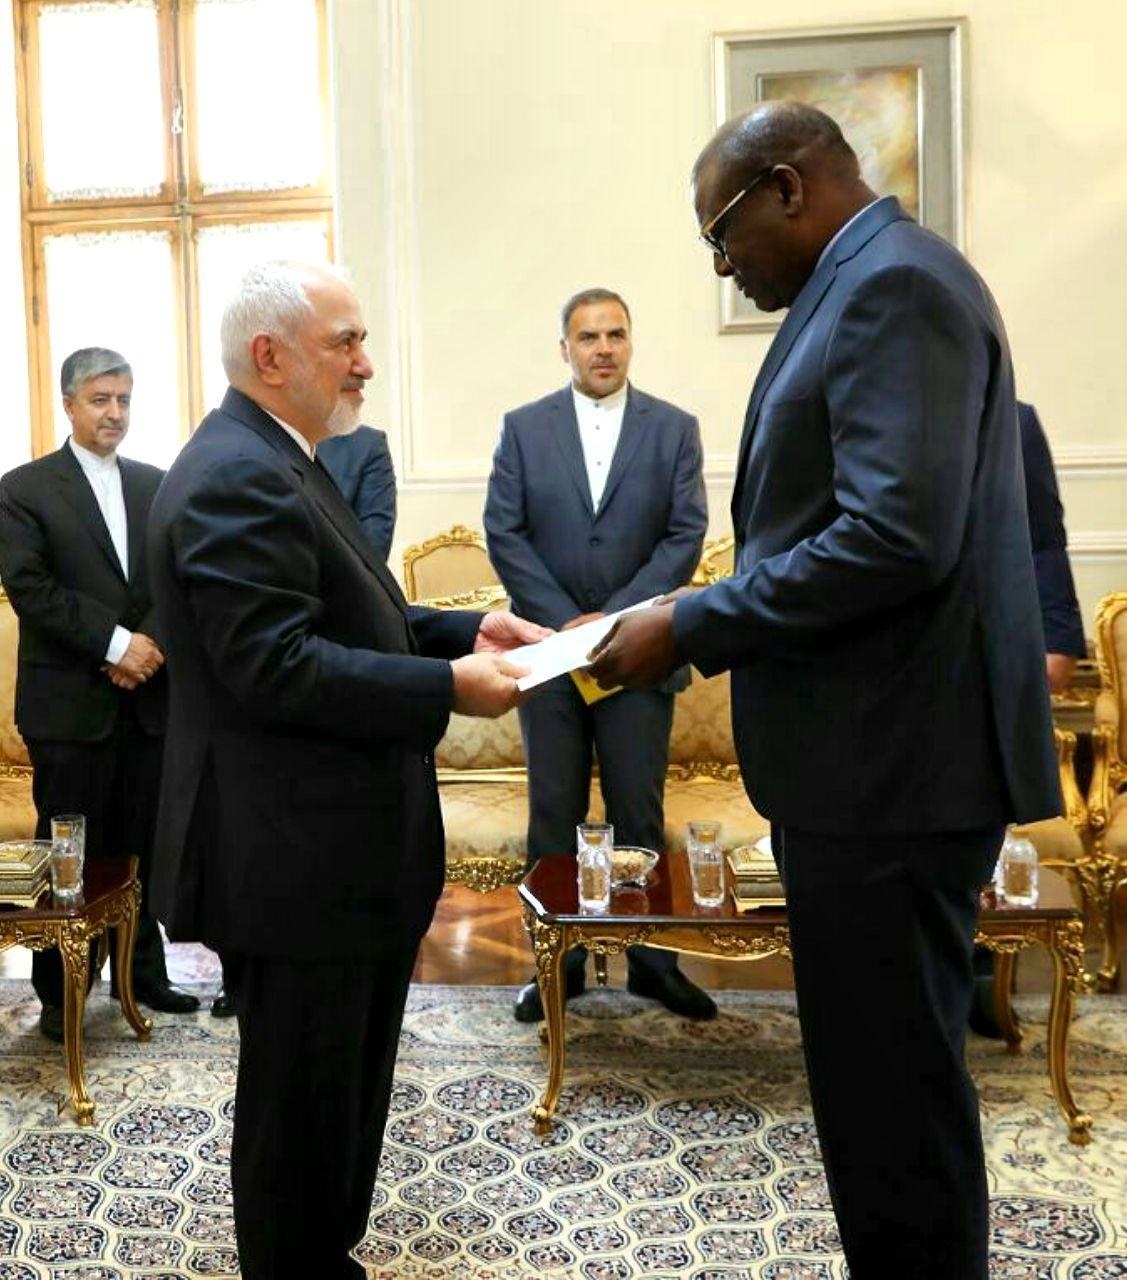 در ادامه نیز سفیر جدید سنگال در ایران در آغاز ماموریت خود در کشورمان با وزیر امور خارجه دیدار و رونوشت استوار نامه خود را تسلیم ظریف کرد.